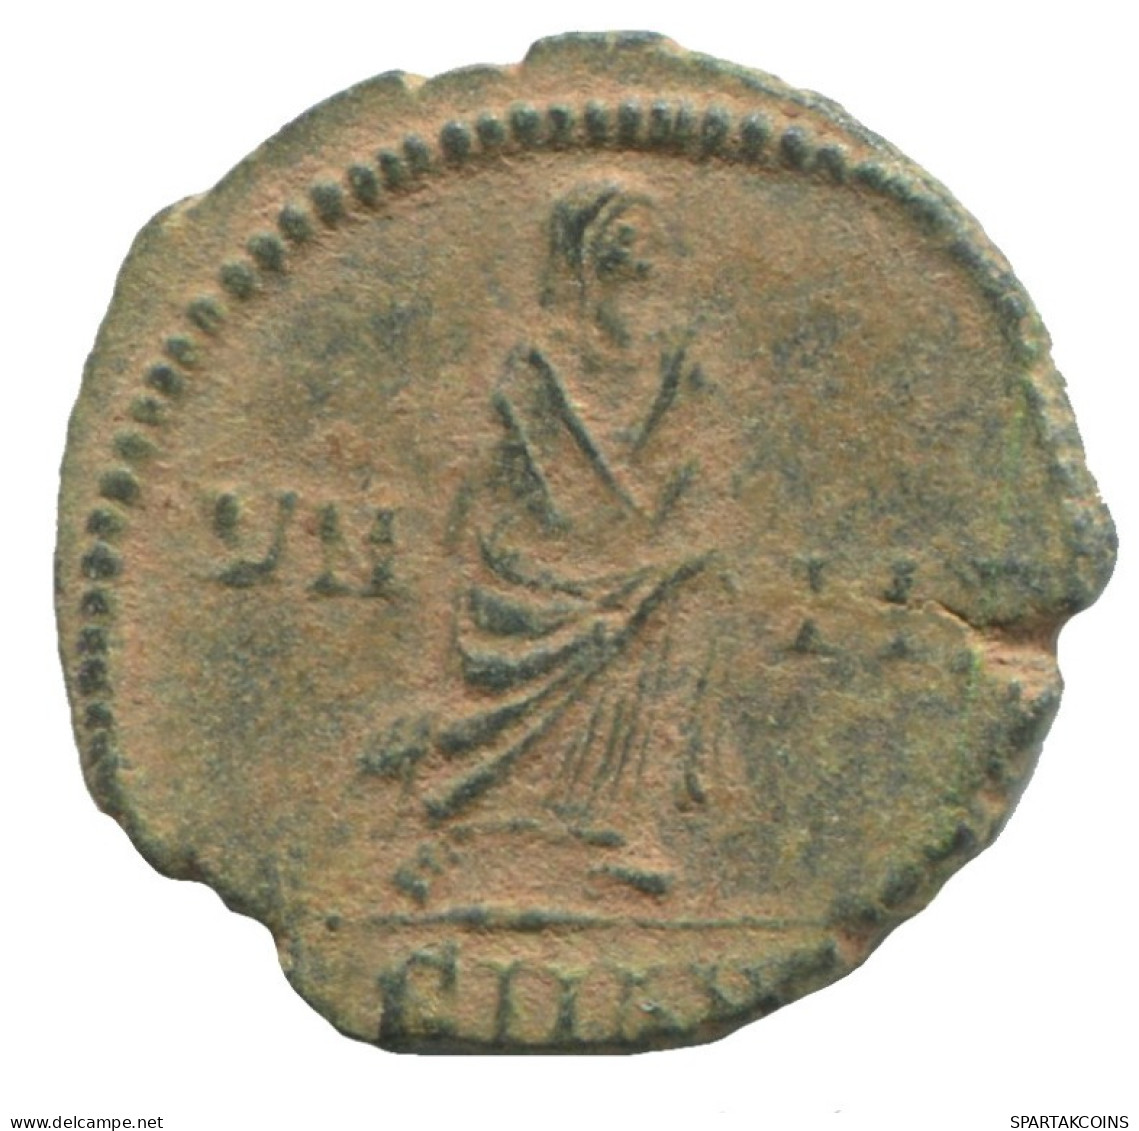 CONSTANTIUS II ARELATUM CON AD347-348 VN MR 1.4g/16mm #ANN1588.10.D.A - The Christian Empire (307 AD To 363 AD)